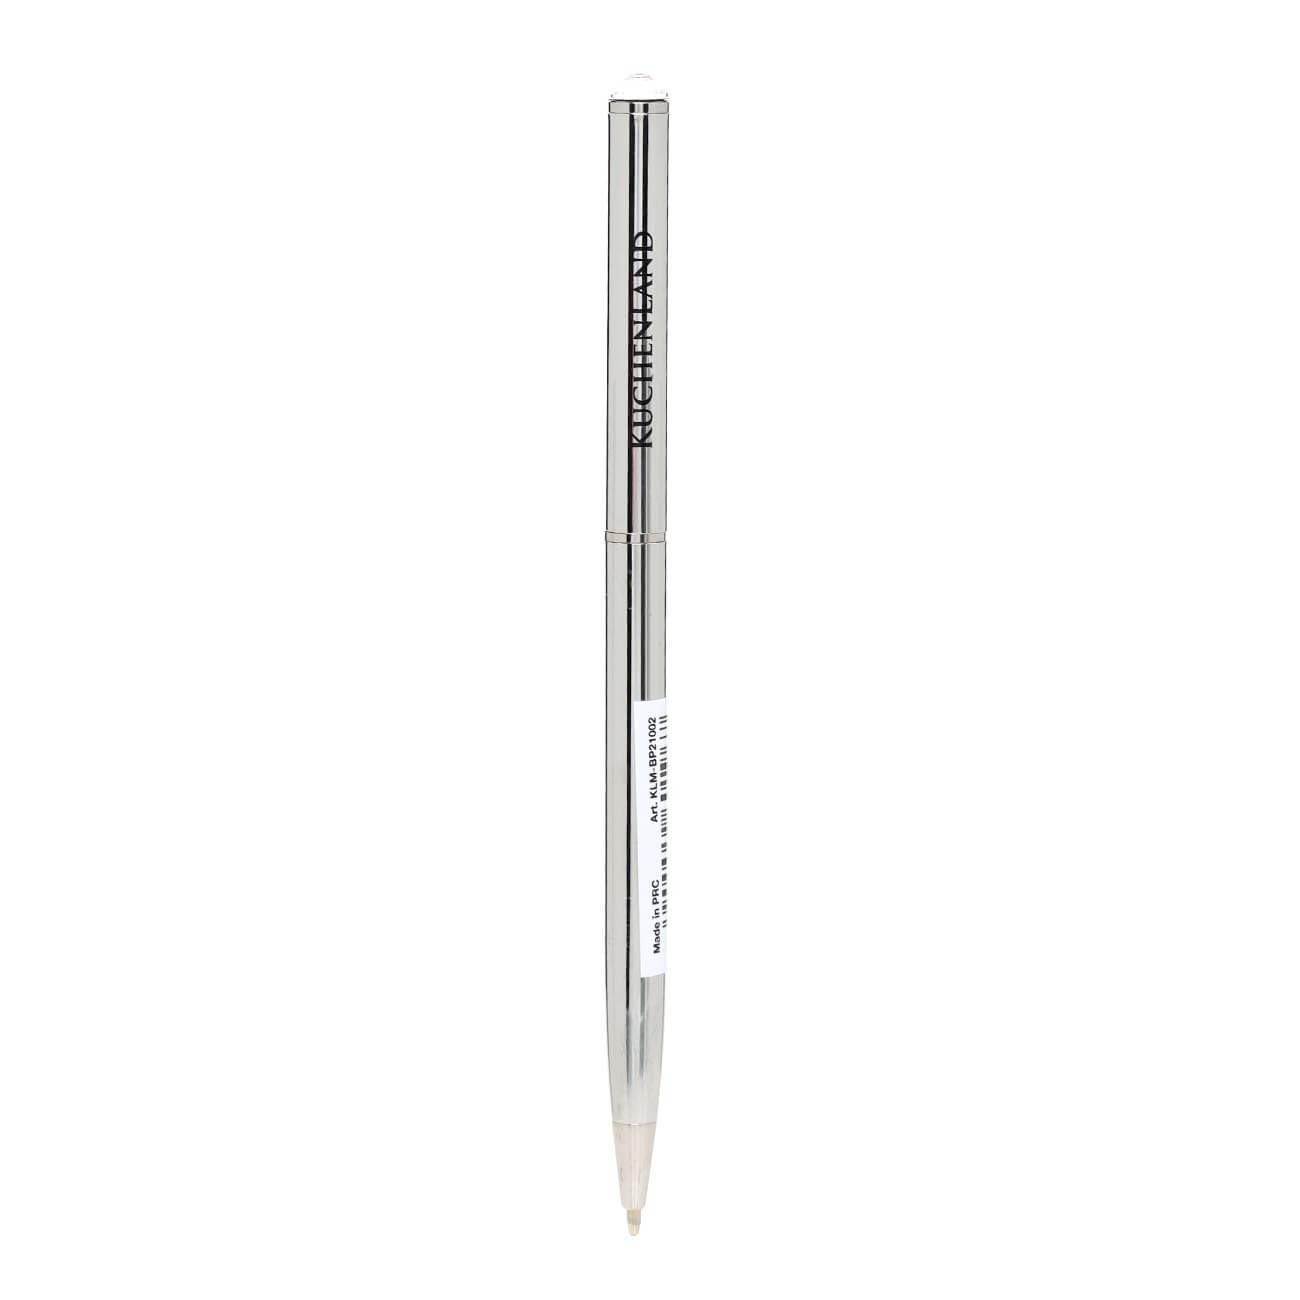 Ручка шариковая, 13 см, с кристаллом, металл, серебристая, Draw ручка подарочная шариковая автоматическая